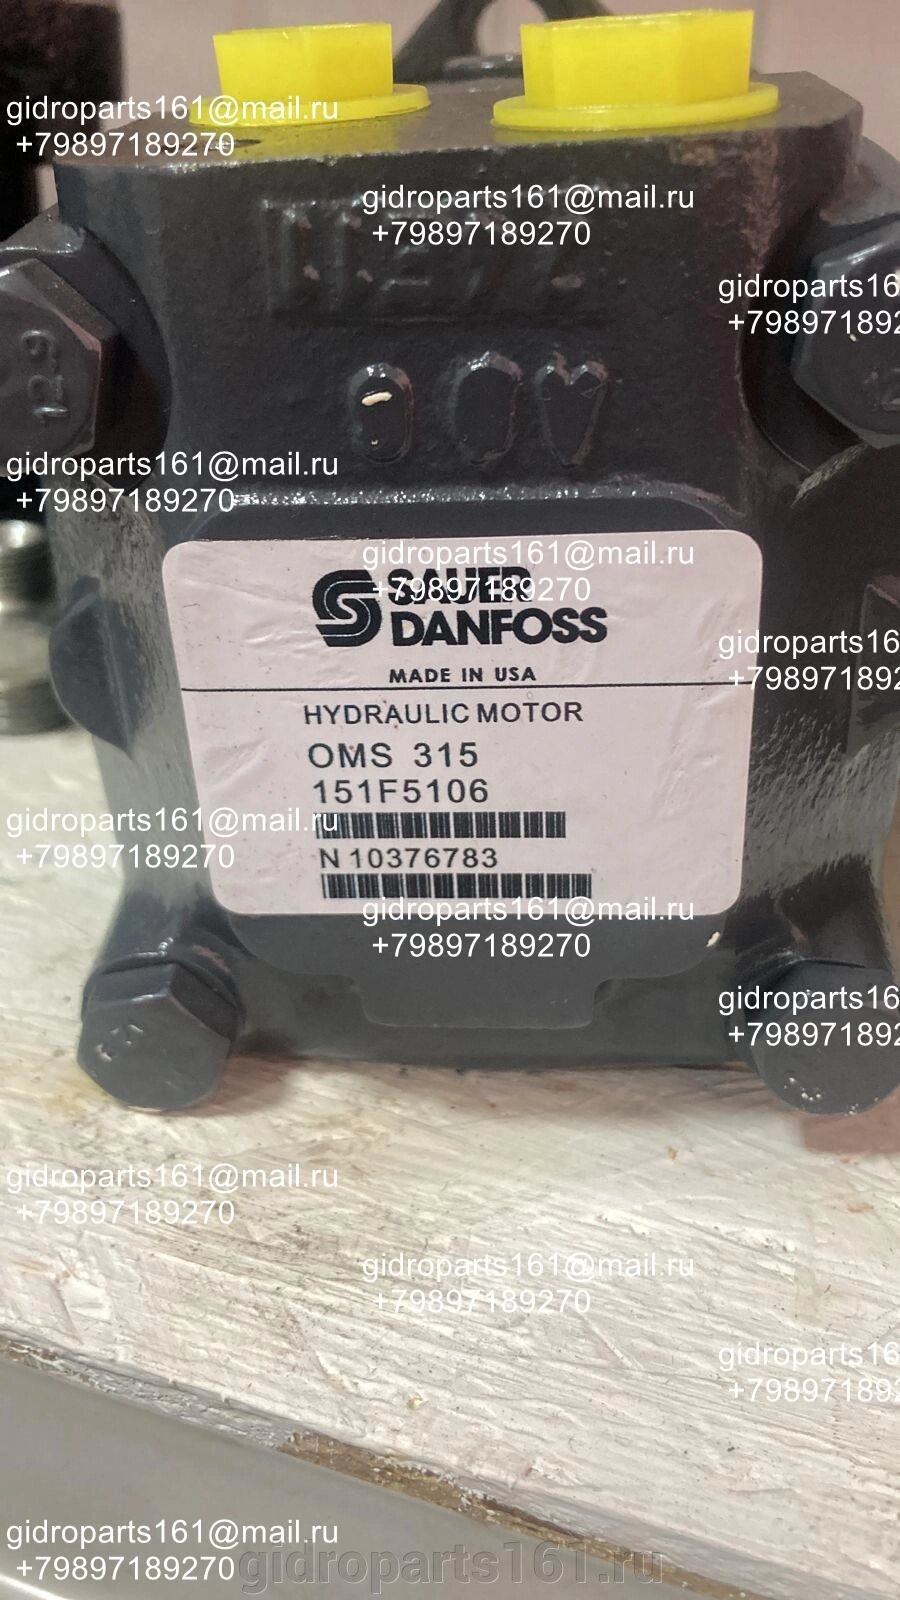 Гидромотор SAUER DANFOSS OMS 315 от компании Гидравлические запчасти 161 - фото 1